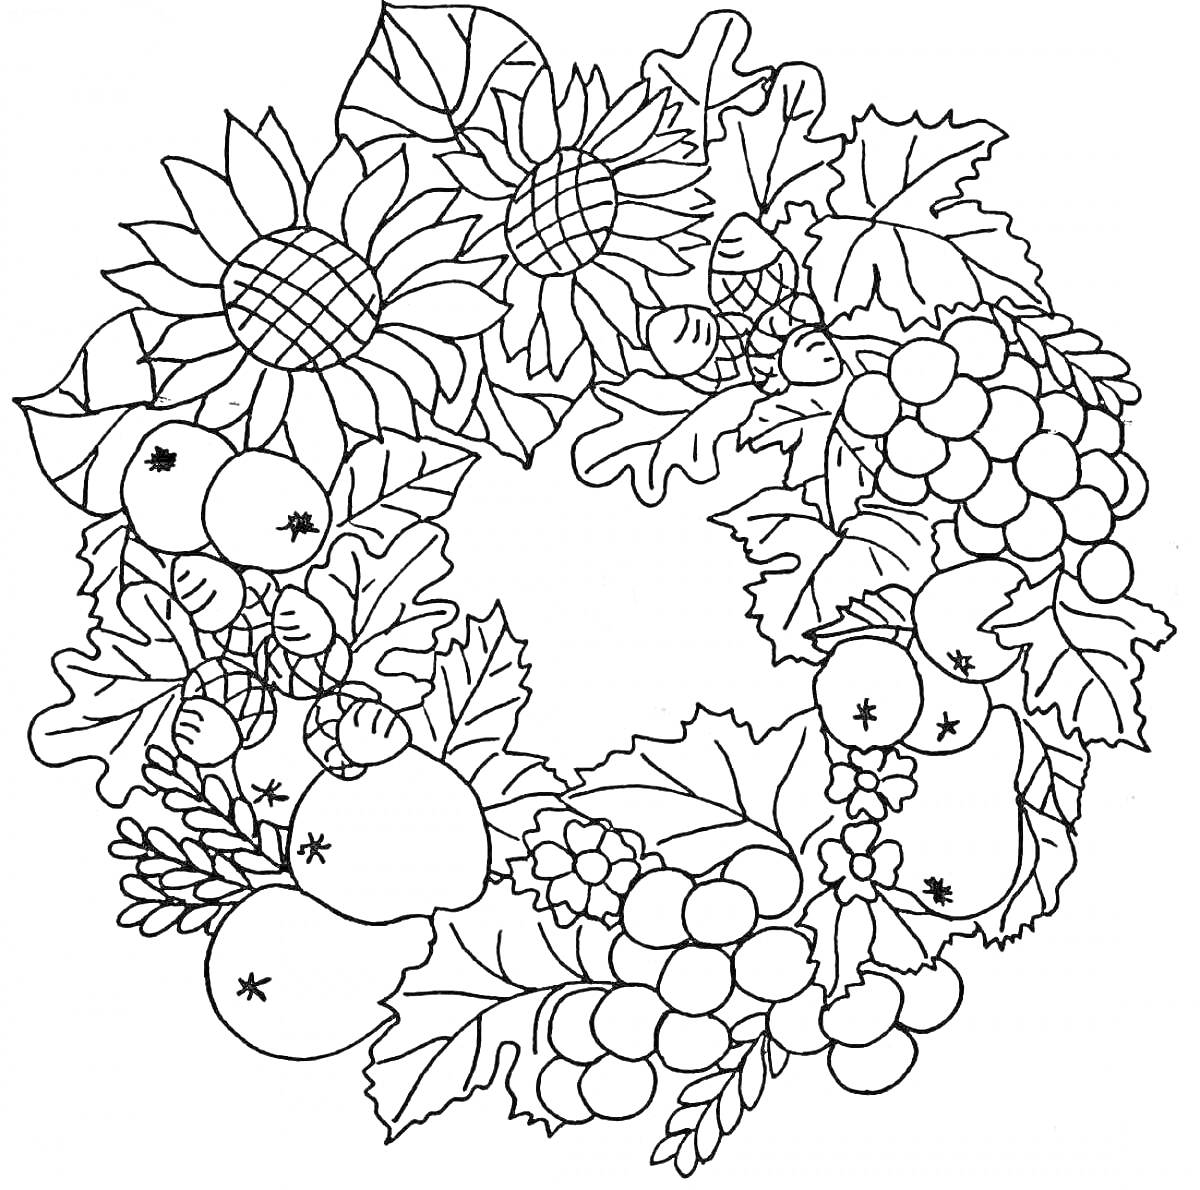 Раскраска Осенний букет с подсолнухами, яблоками, ягодами, желтыми листьями и веточками рябины.